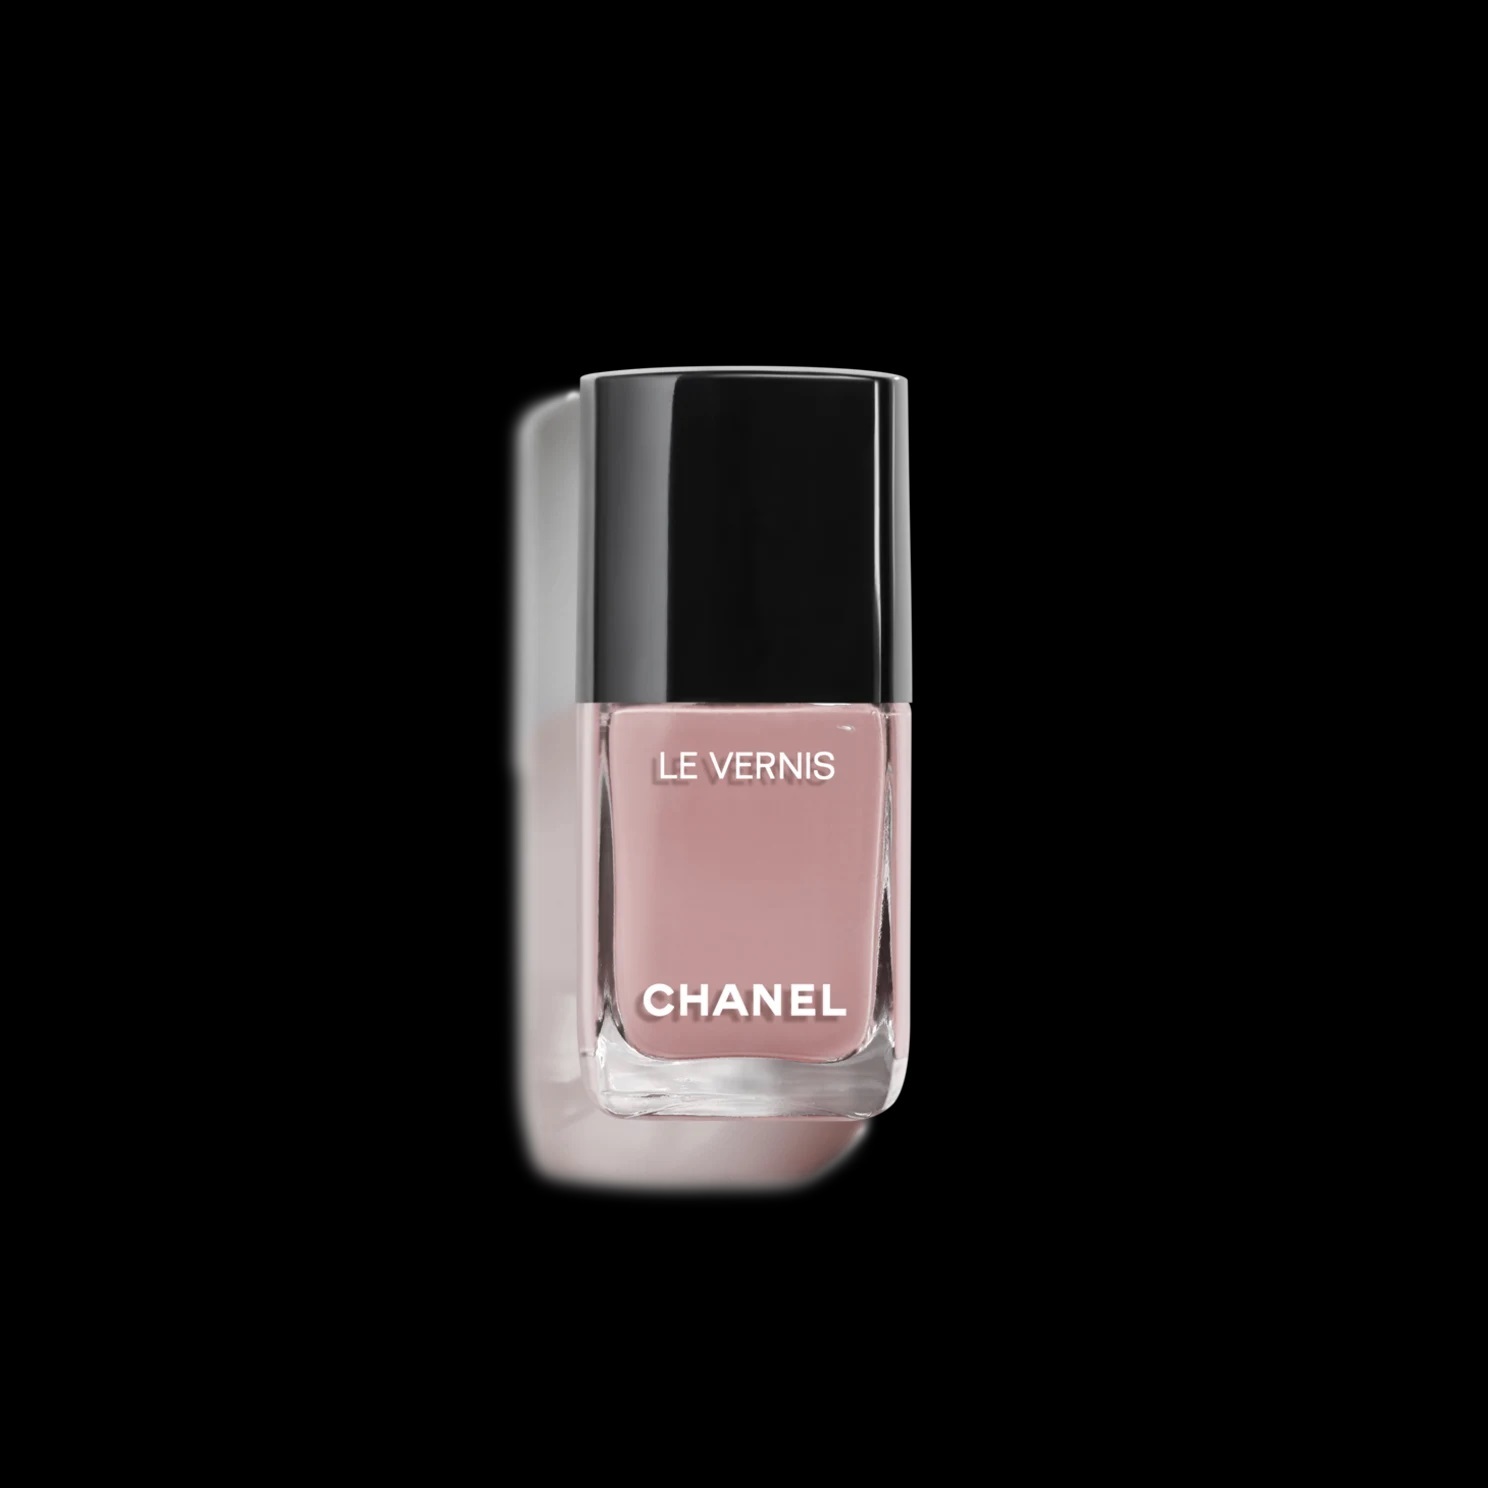 ALT: Esmalte Le Vernis de Chanel en tono Daydream.